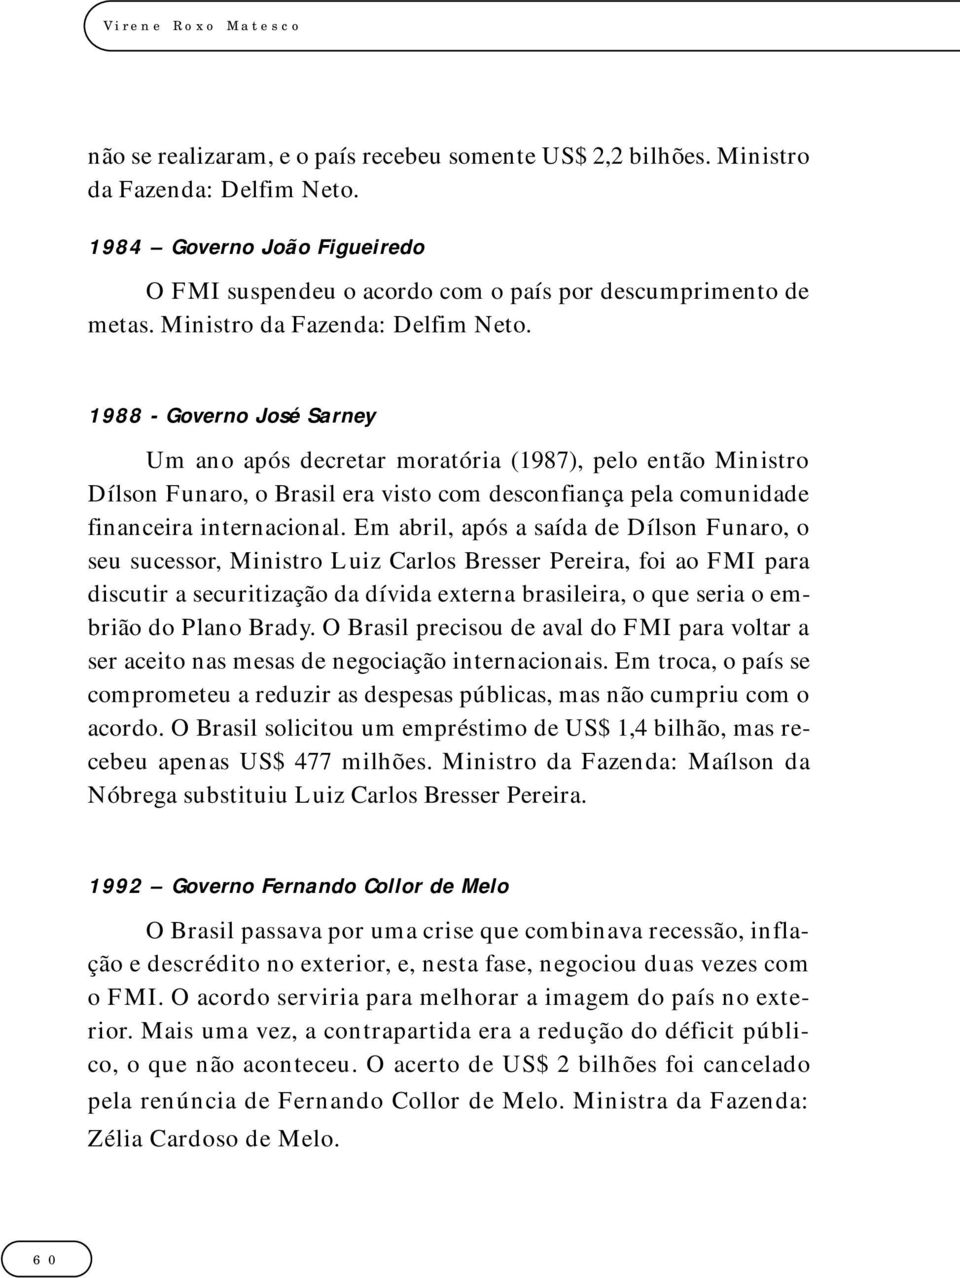 1988 - Governo José Sarney Um ano após decretar moratória (1987), pelo então Ministro Dílson Funaro, o Brasil era visto com desconfiança pela comunidade financeira internacional.